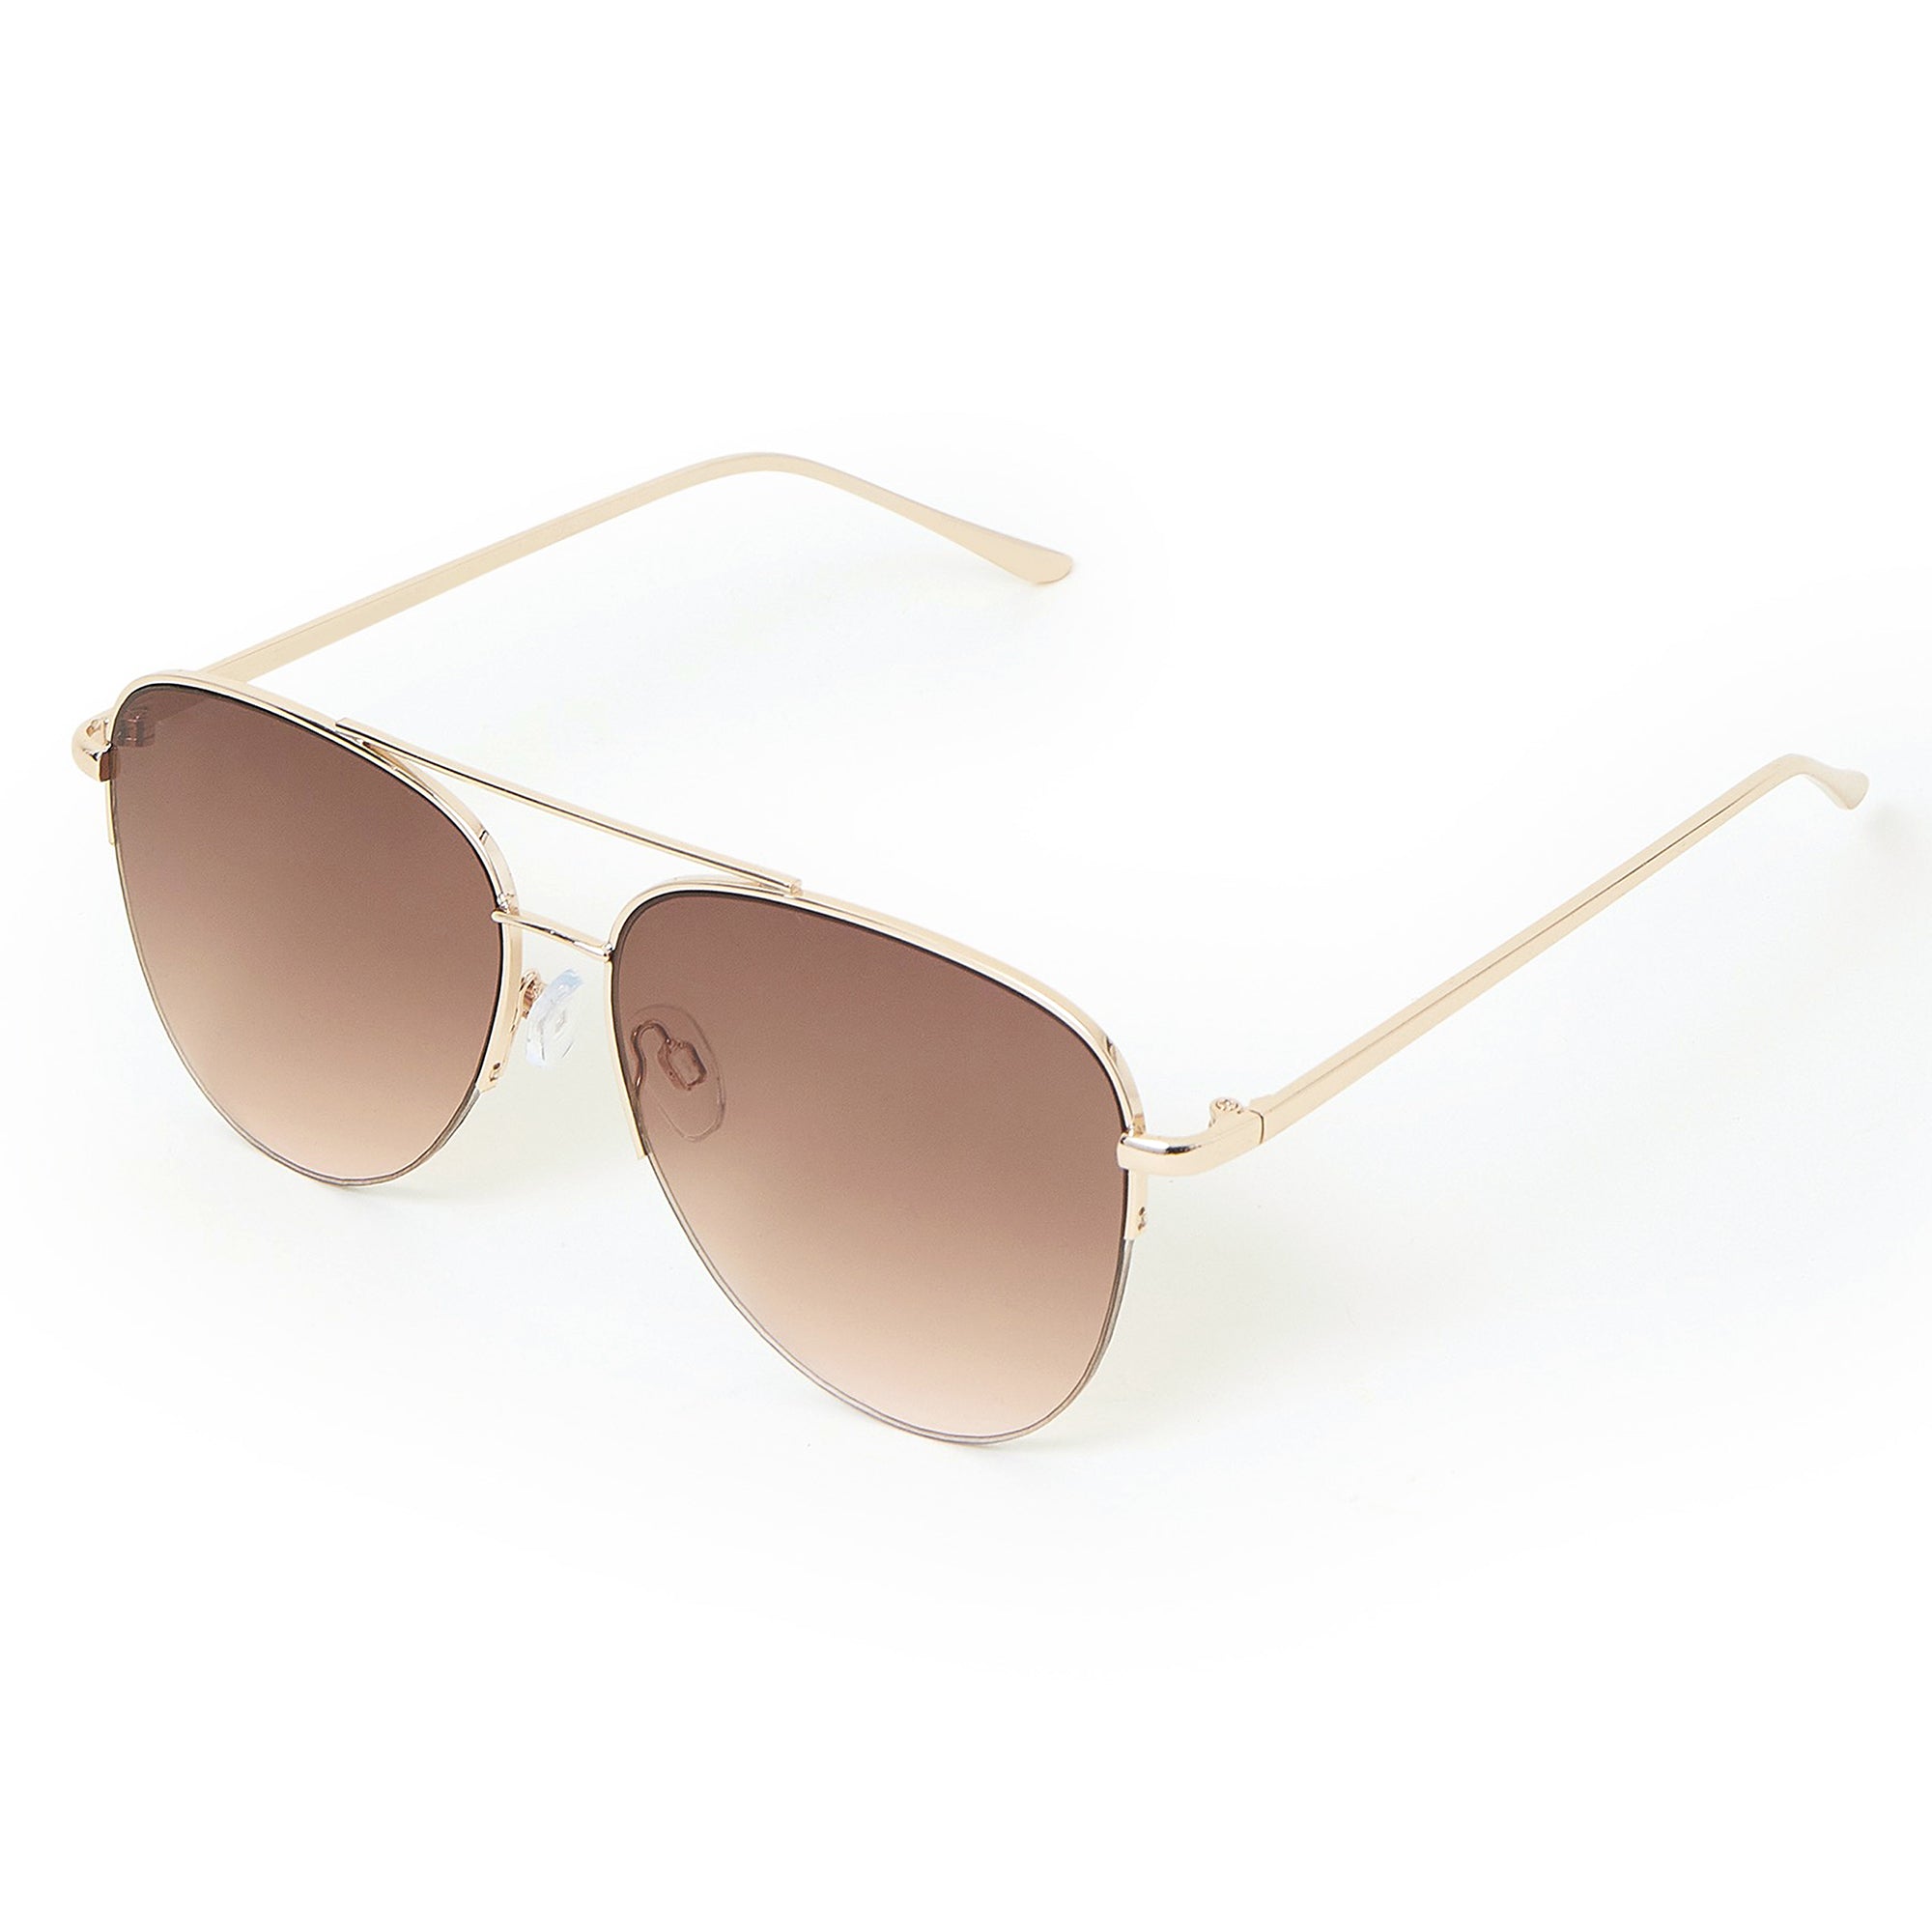 Schmaltzy Bright Gold Champagne Tint Uni-Sex Aviator Sunglasses | Le Specs